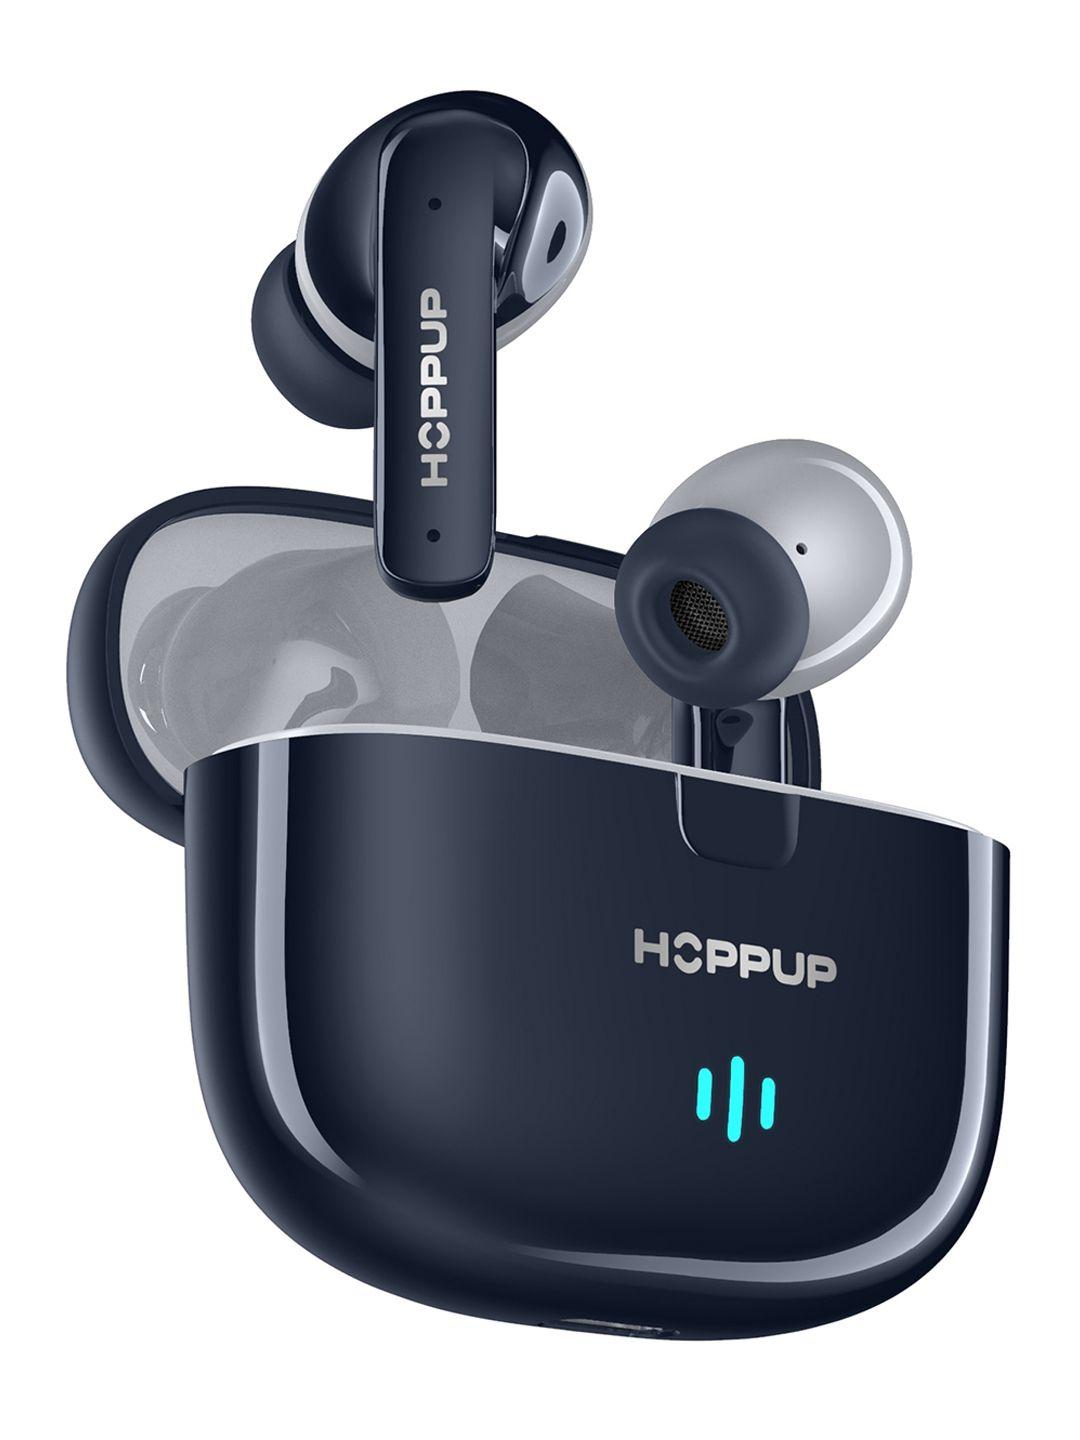 hoppup airdoze z50 with quad mic enc headphones